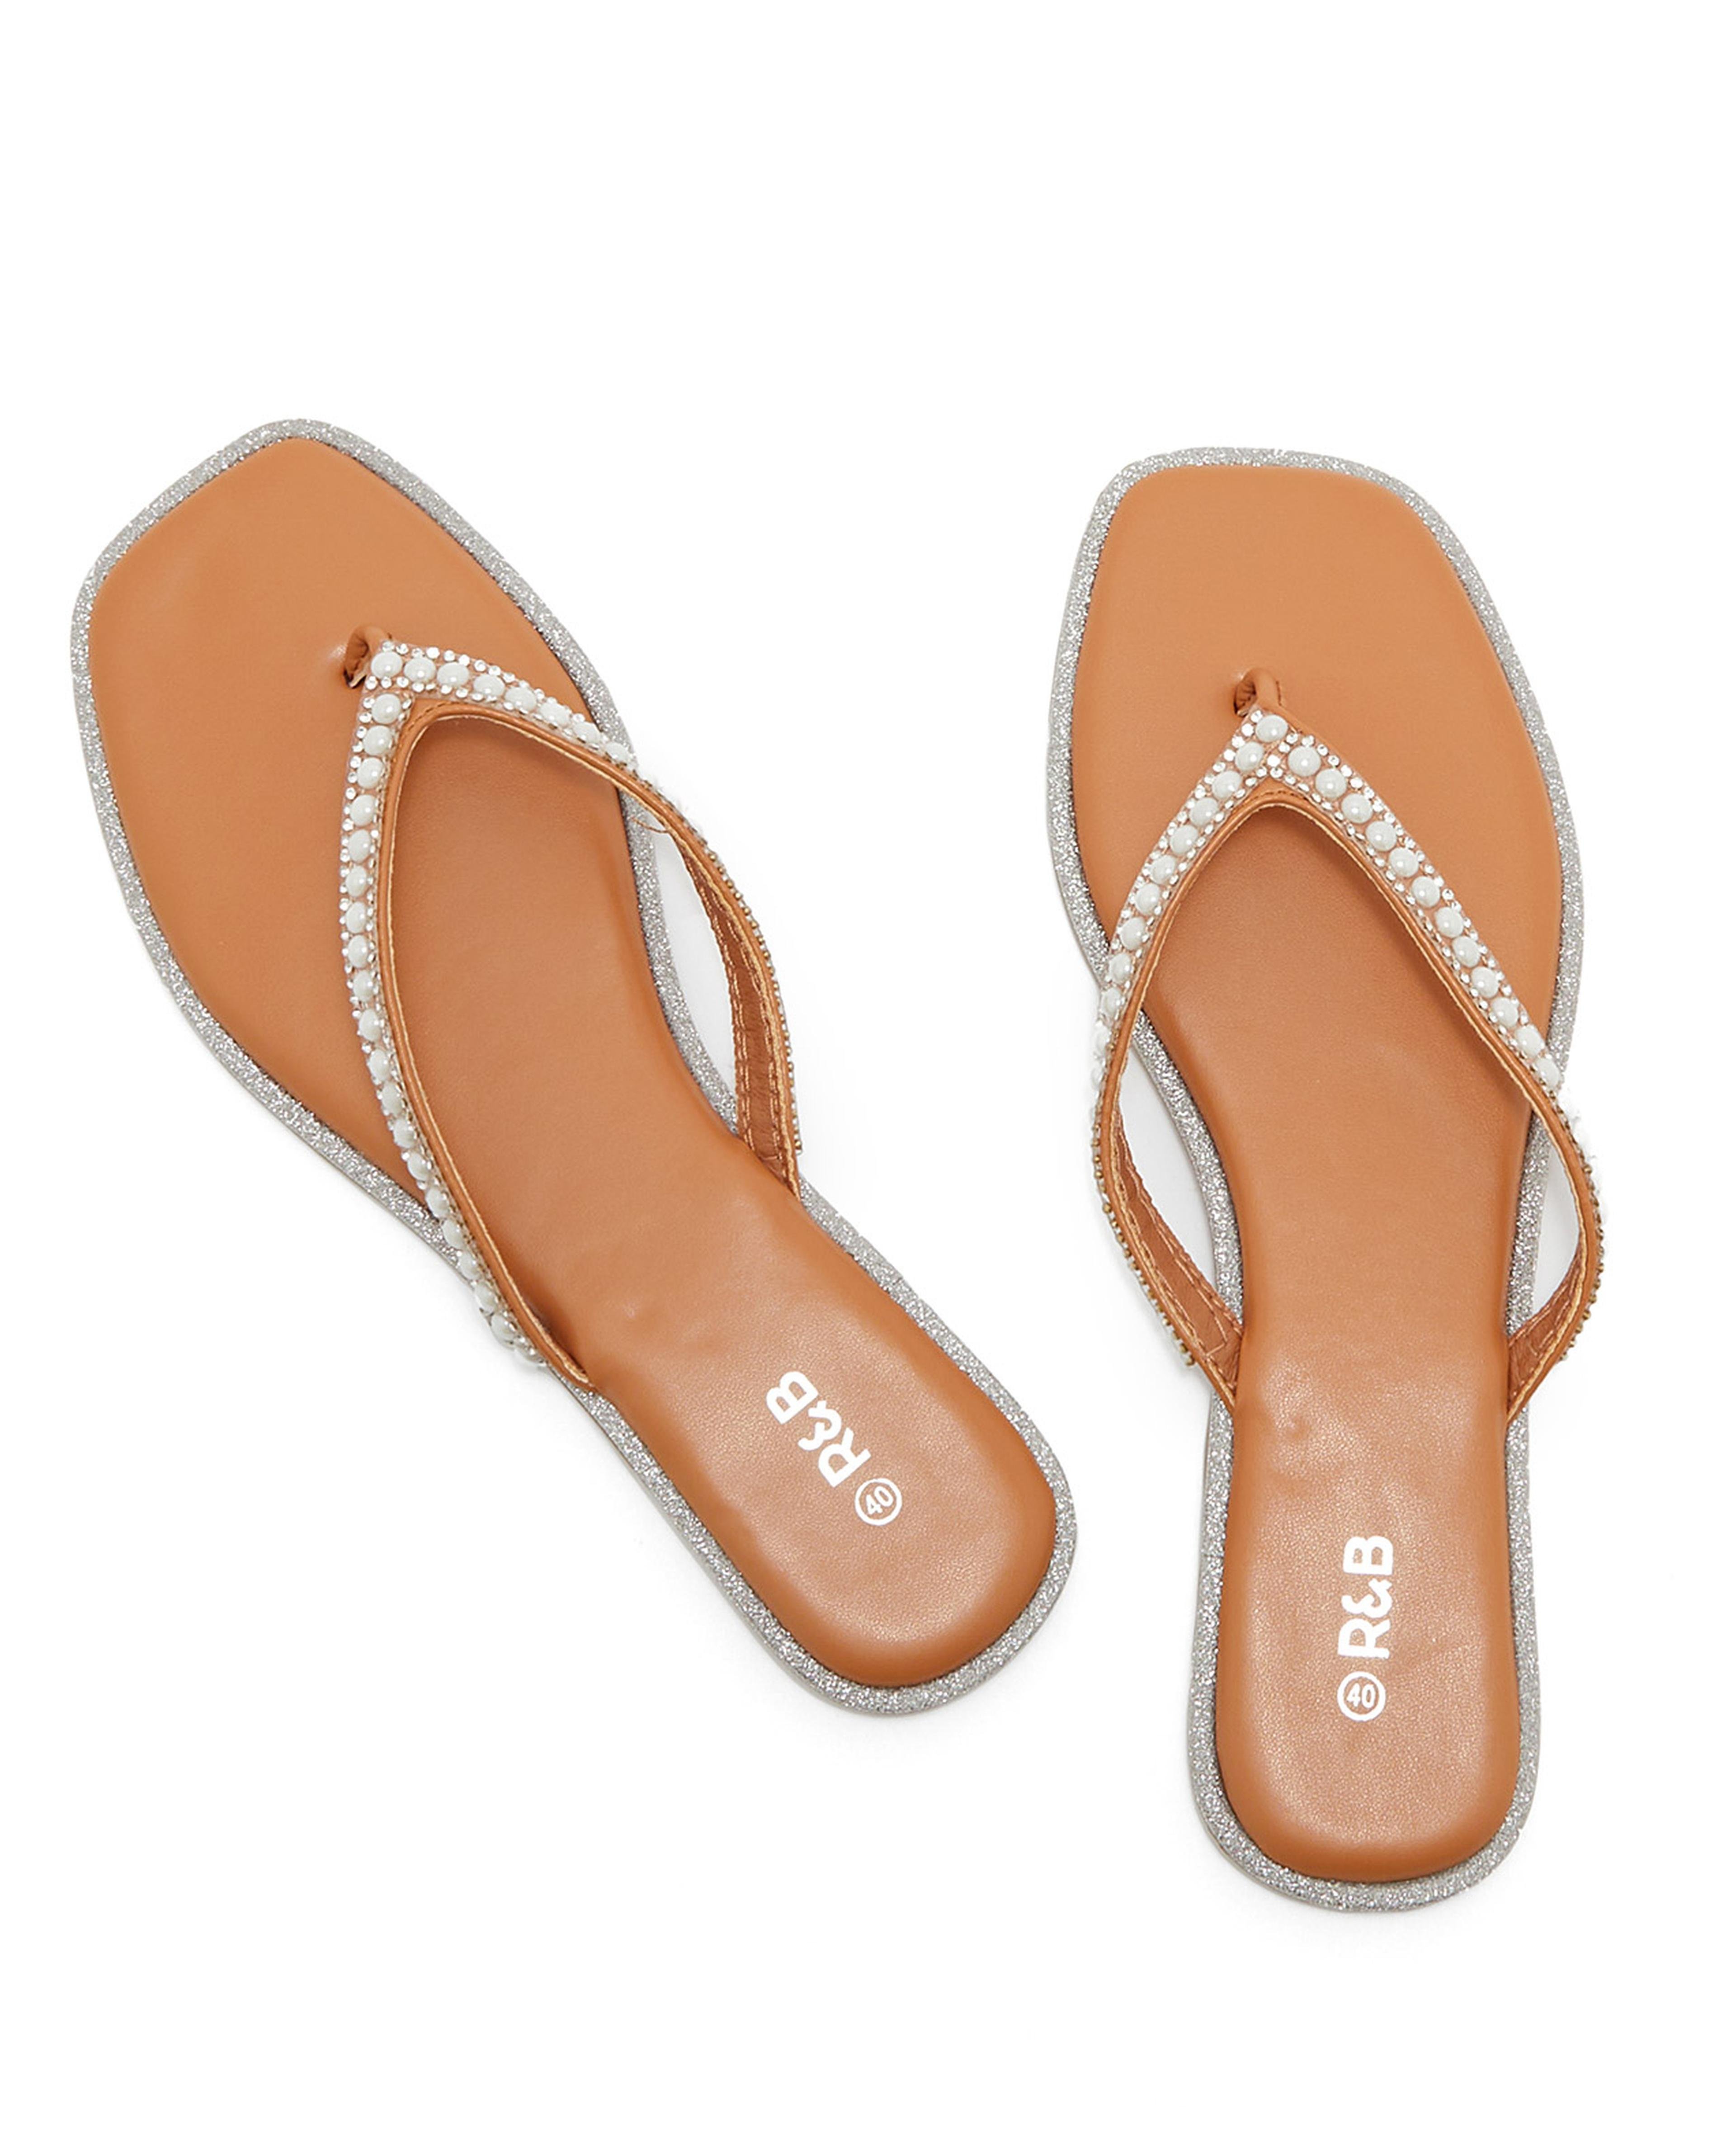 Pearl Strap Flat Sandals